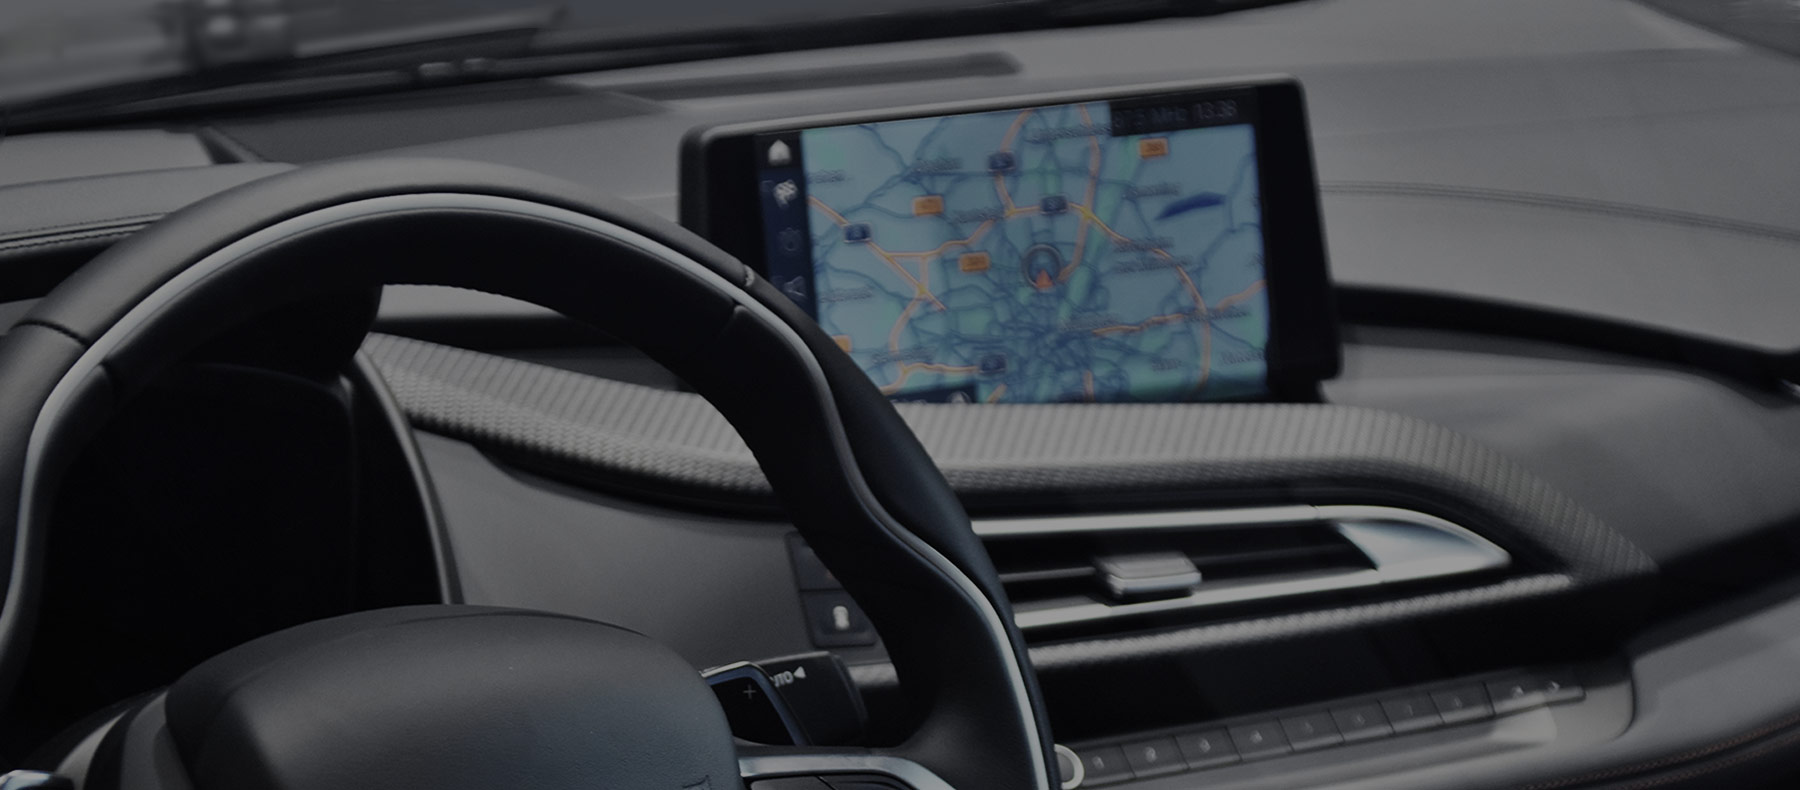 Cellphone inside car tracking fleet vehicles